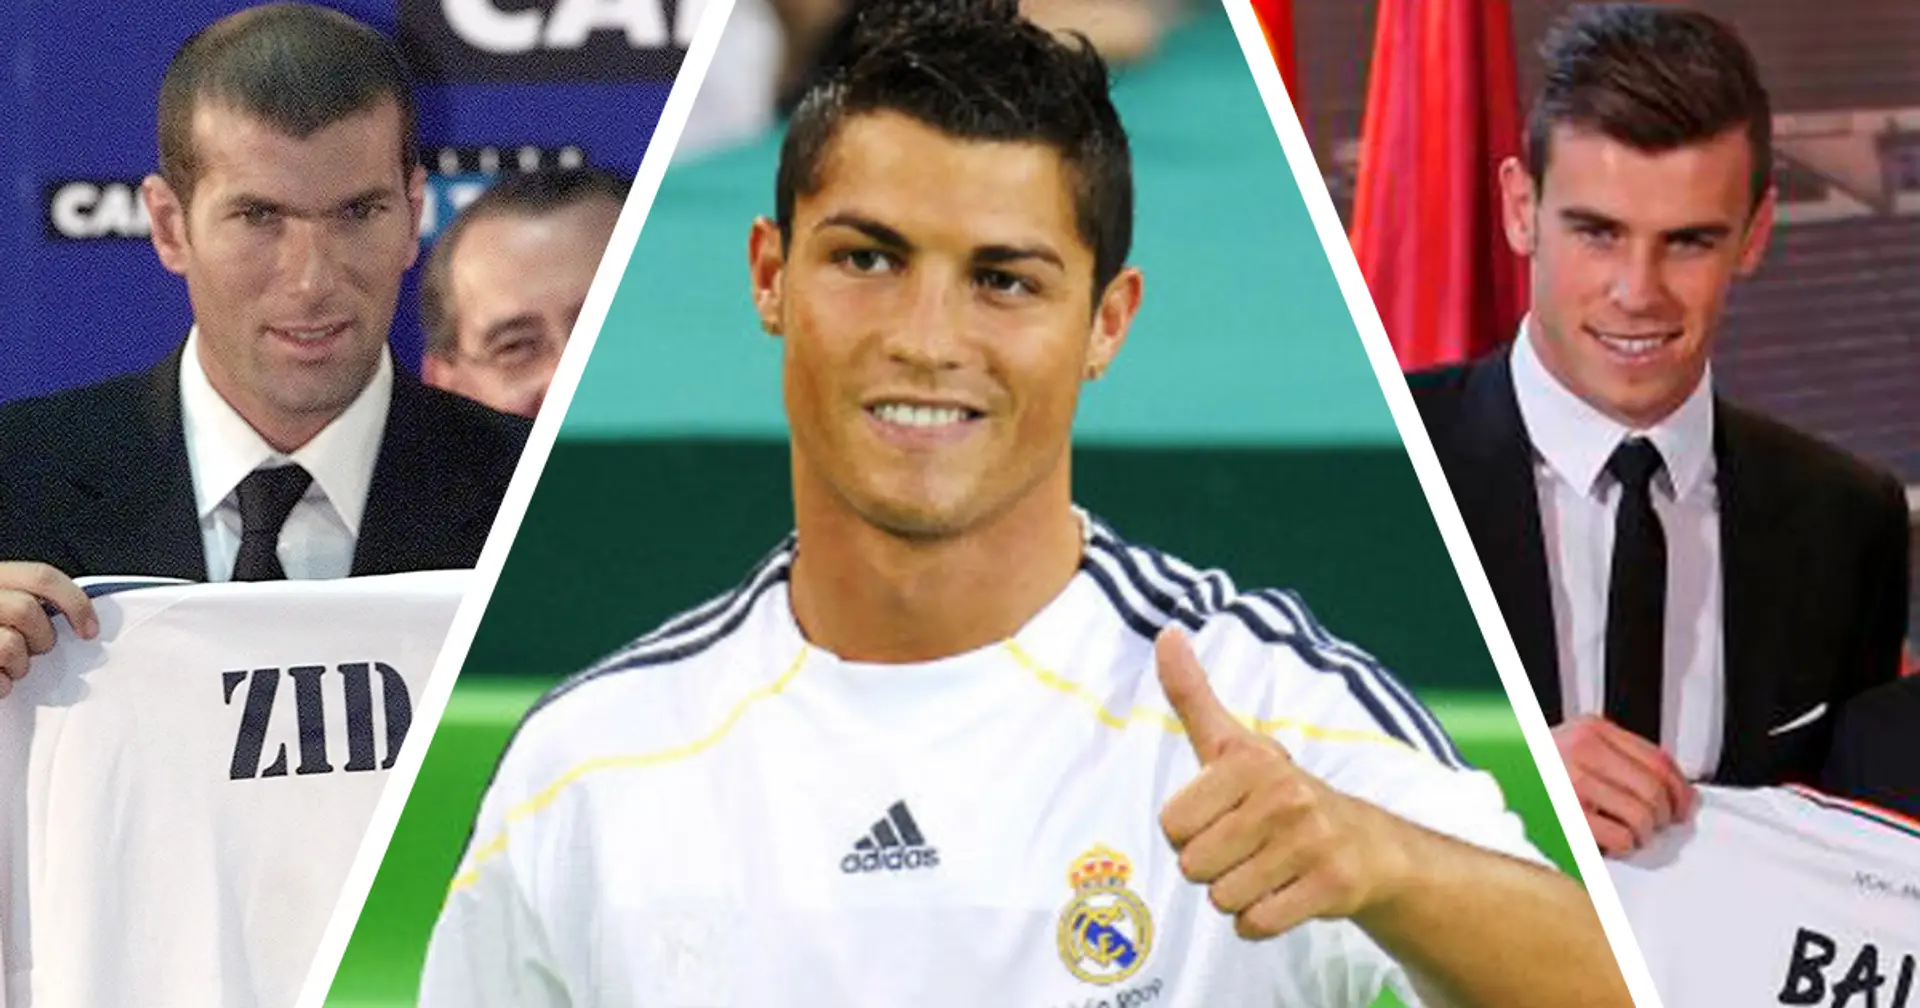 8 transferts coûteux du Real Madrid qui en valaient la peine